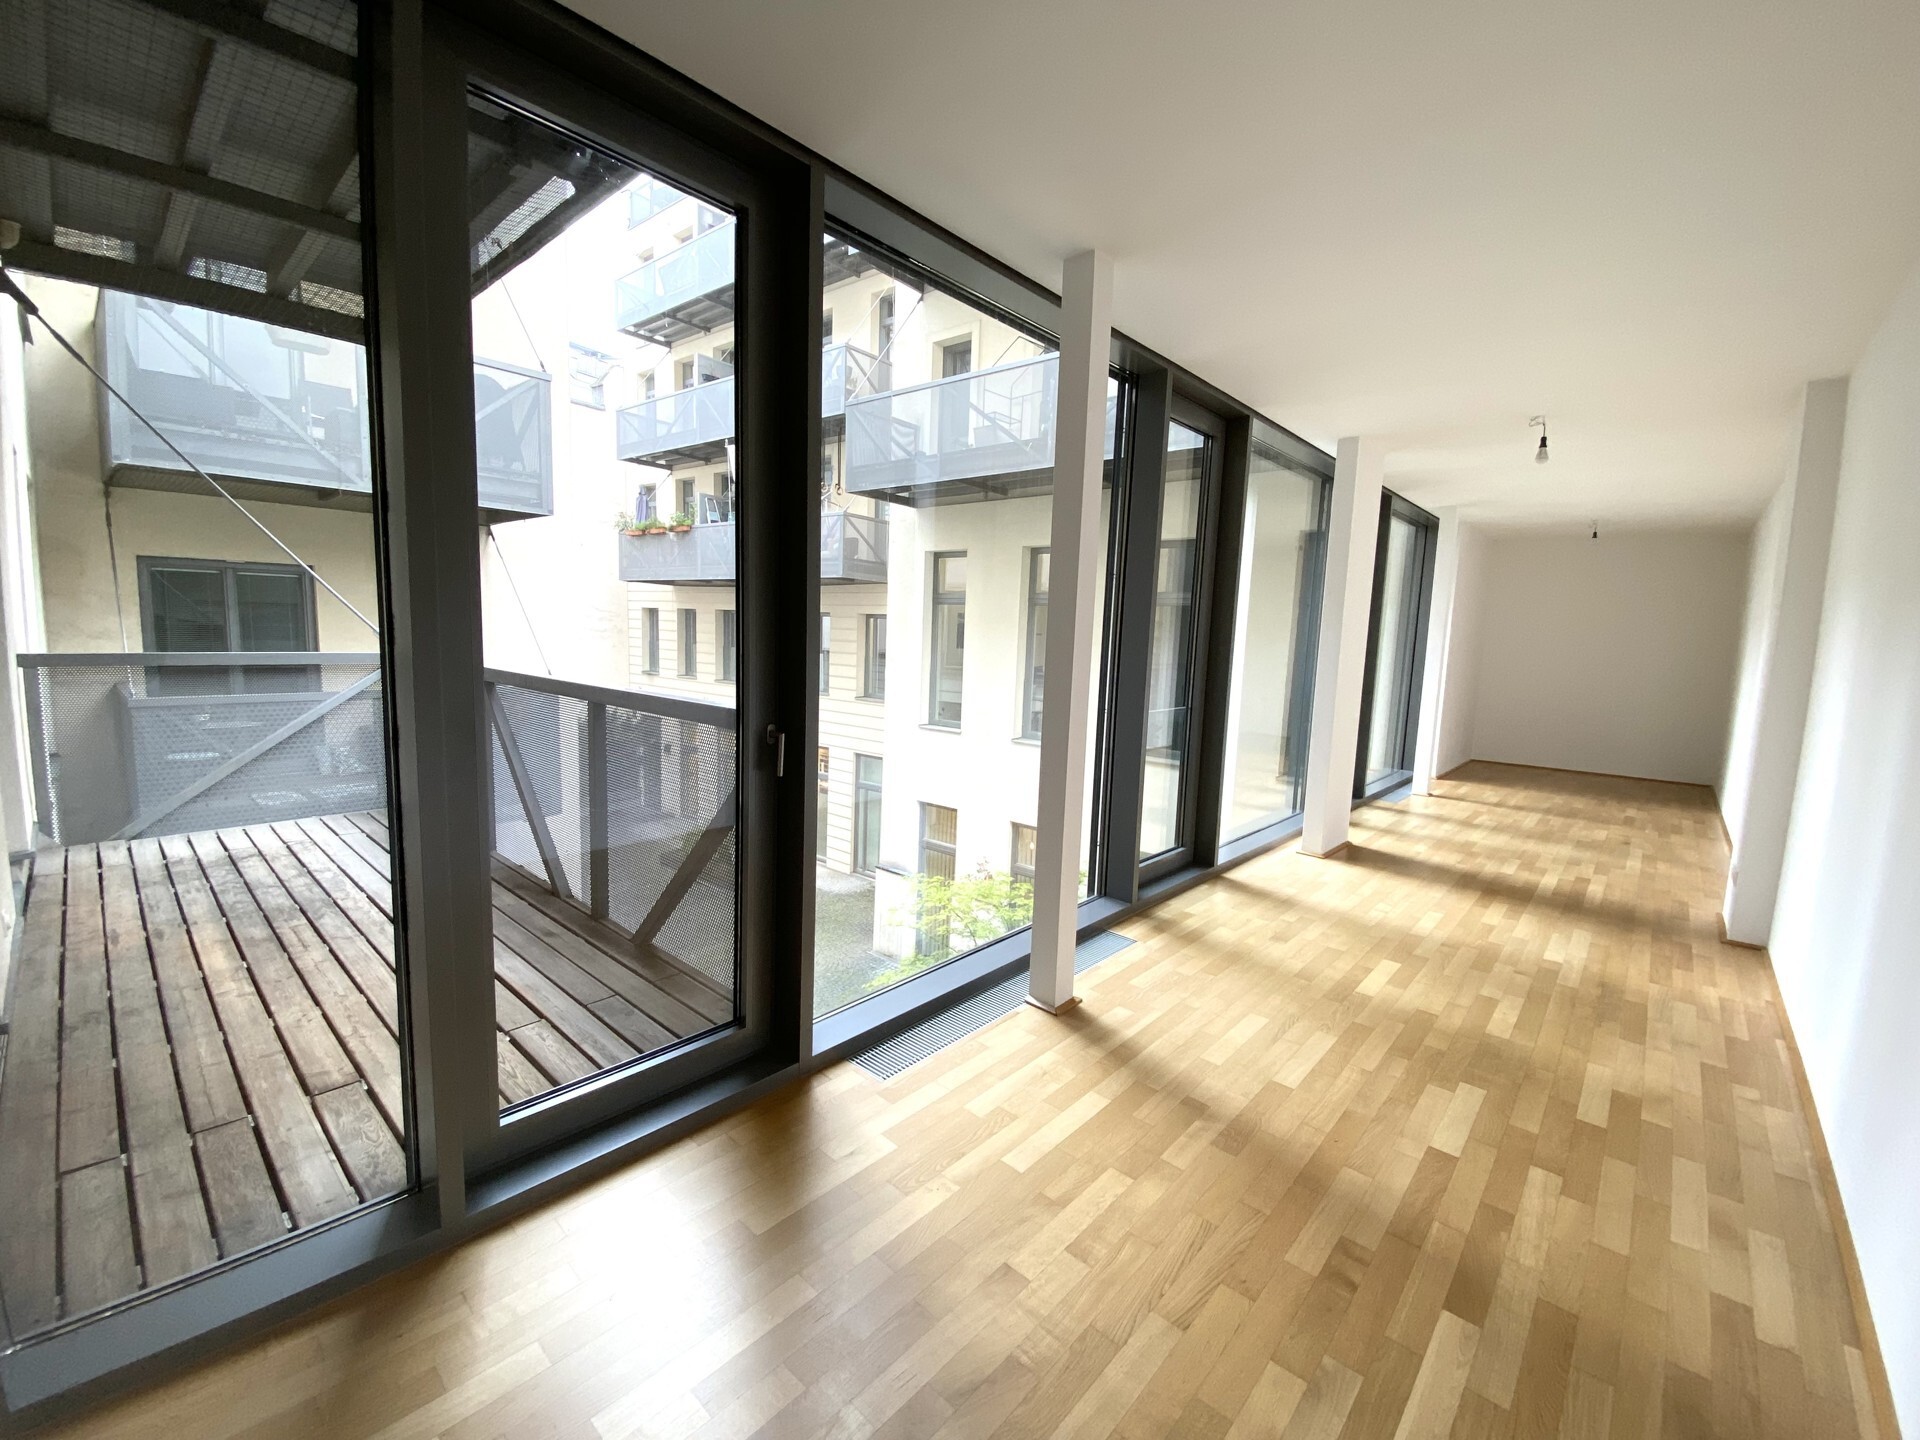 Äußerst großzügige 2-Zimmer-Wohnung mit ca. 9 m² Balkon in Bestlage unbefristet zu mieten in 1070 Wien